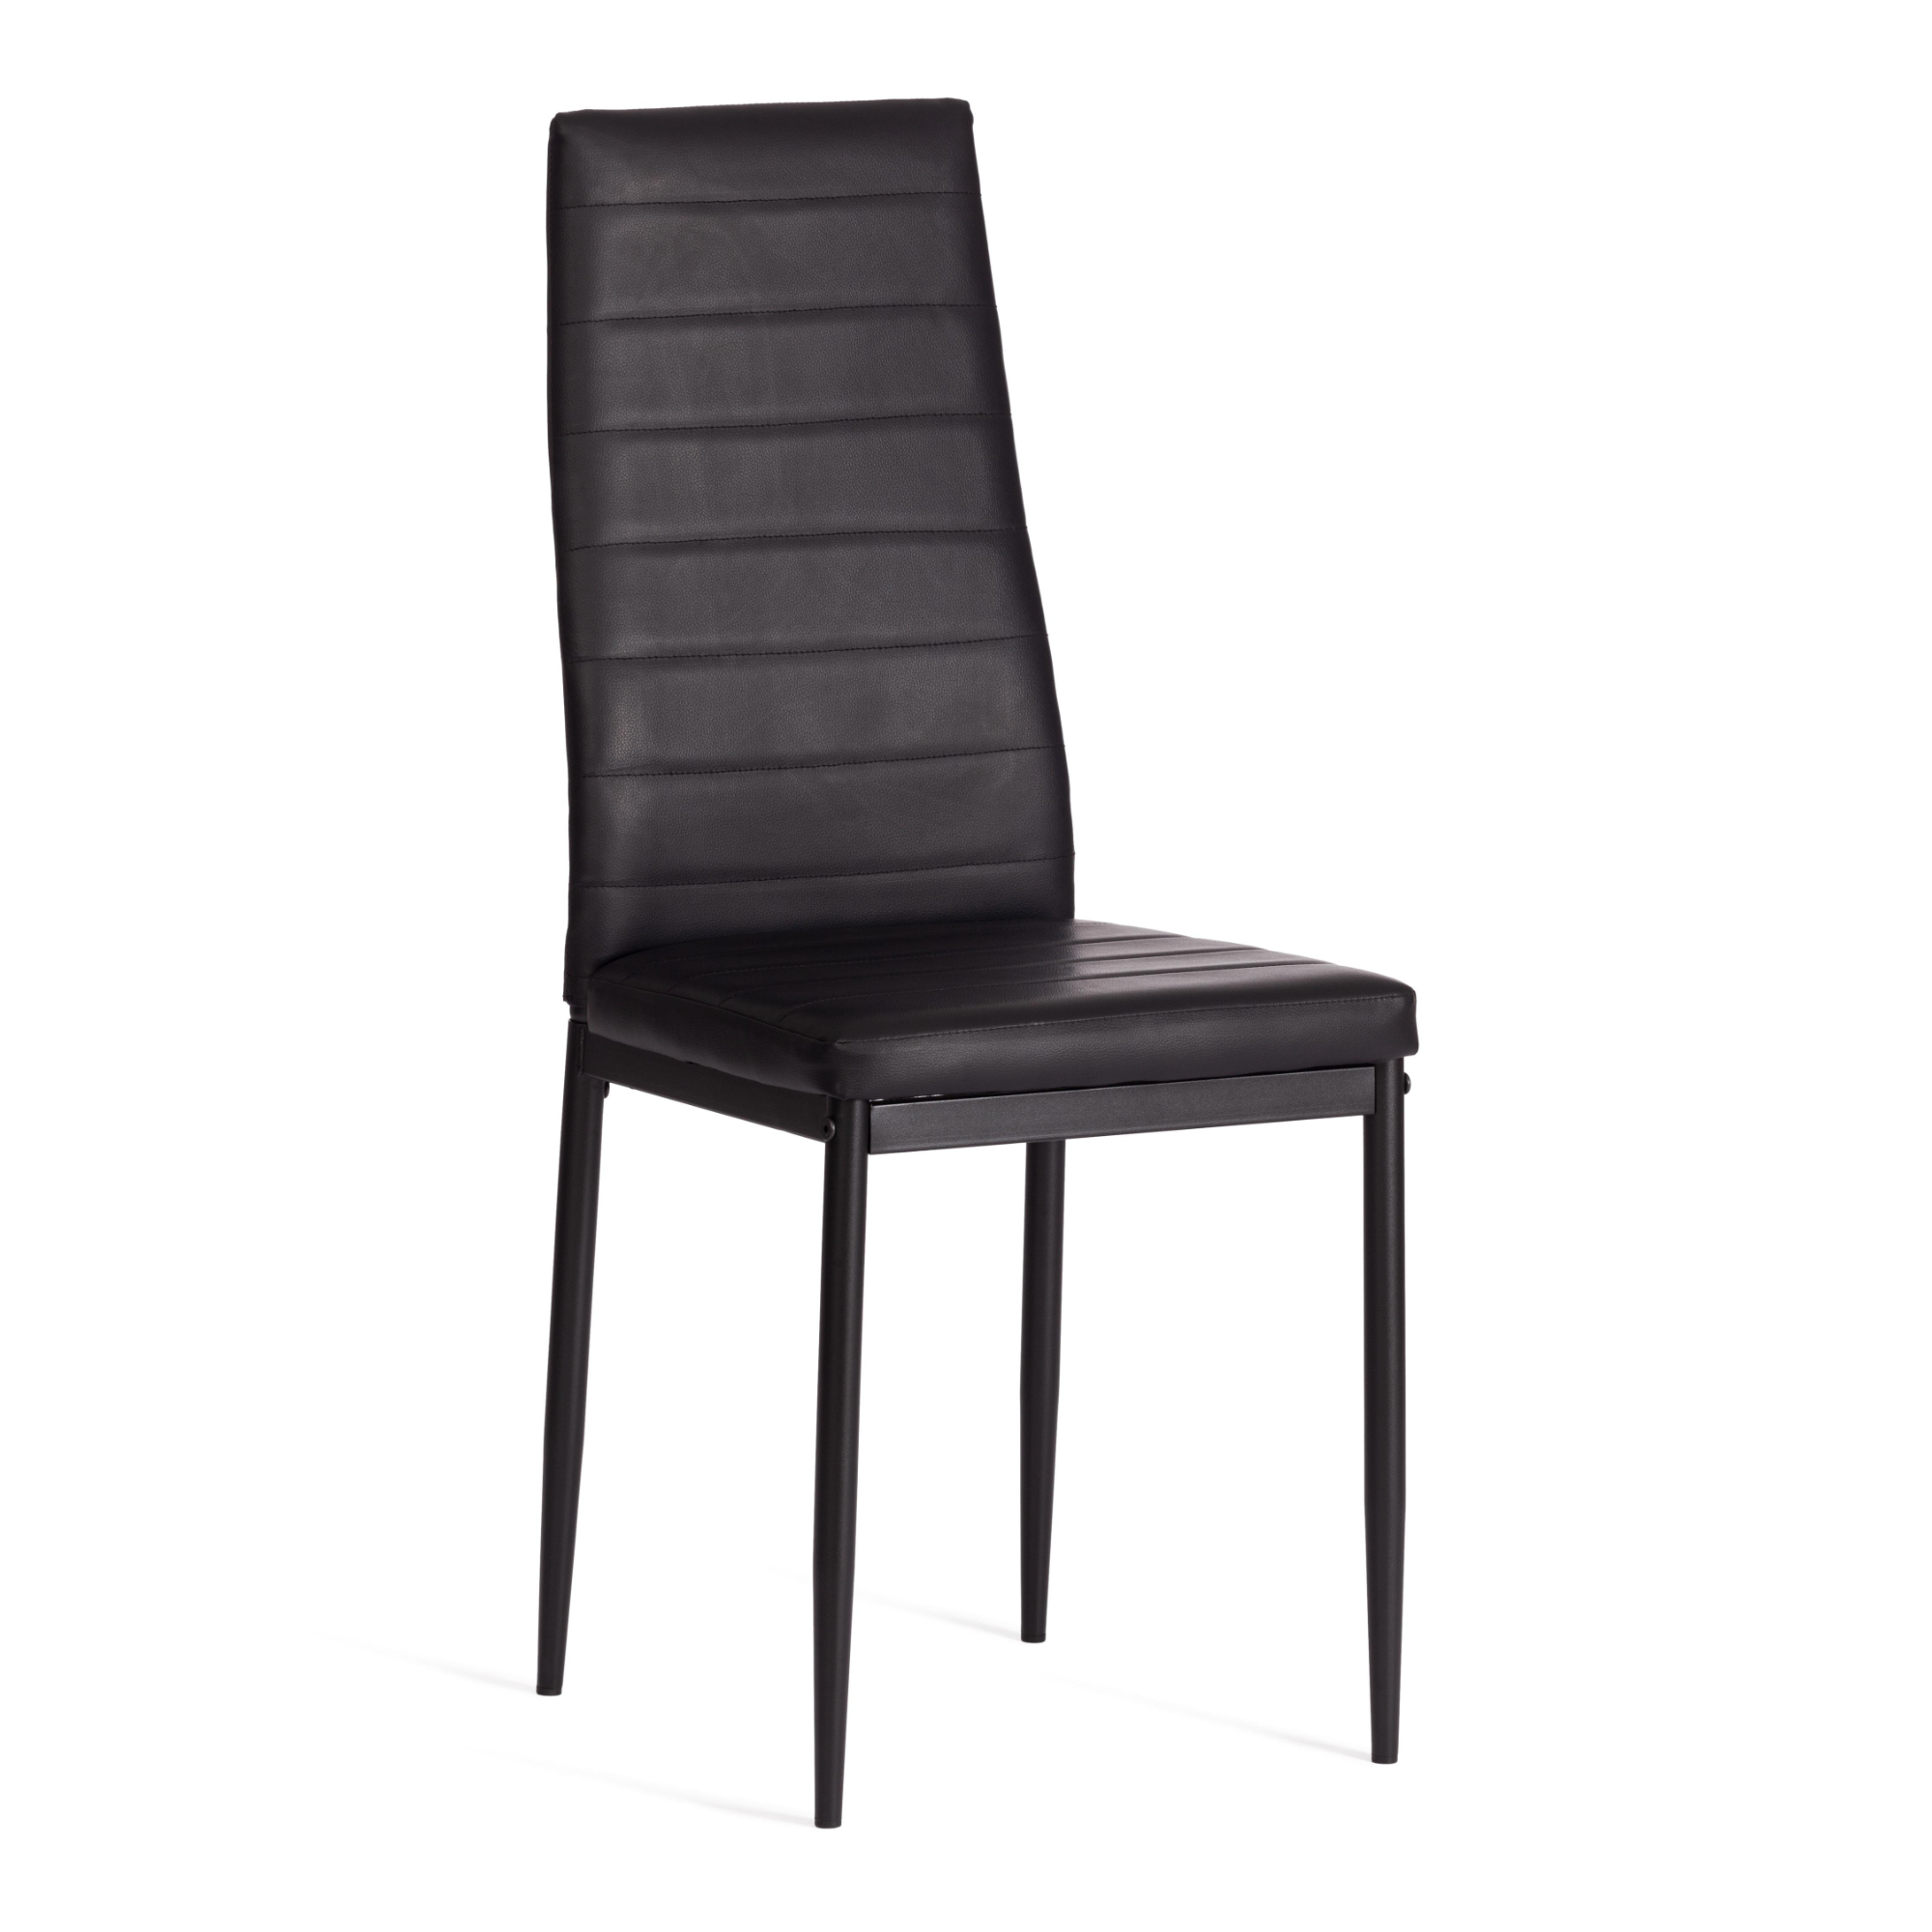 стул пластиковый усиленный стекловолокном для дома и спальни кабинета гостиной комбинированный стол и стул маленький низкий стул для ры Стул ТС Easy экокожа с металлом черный 49х41х98 см